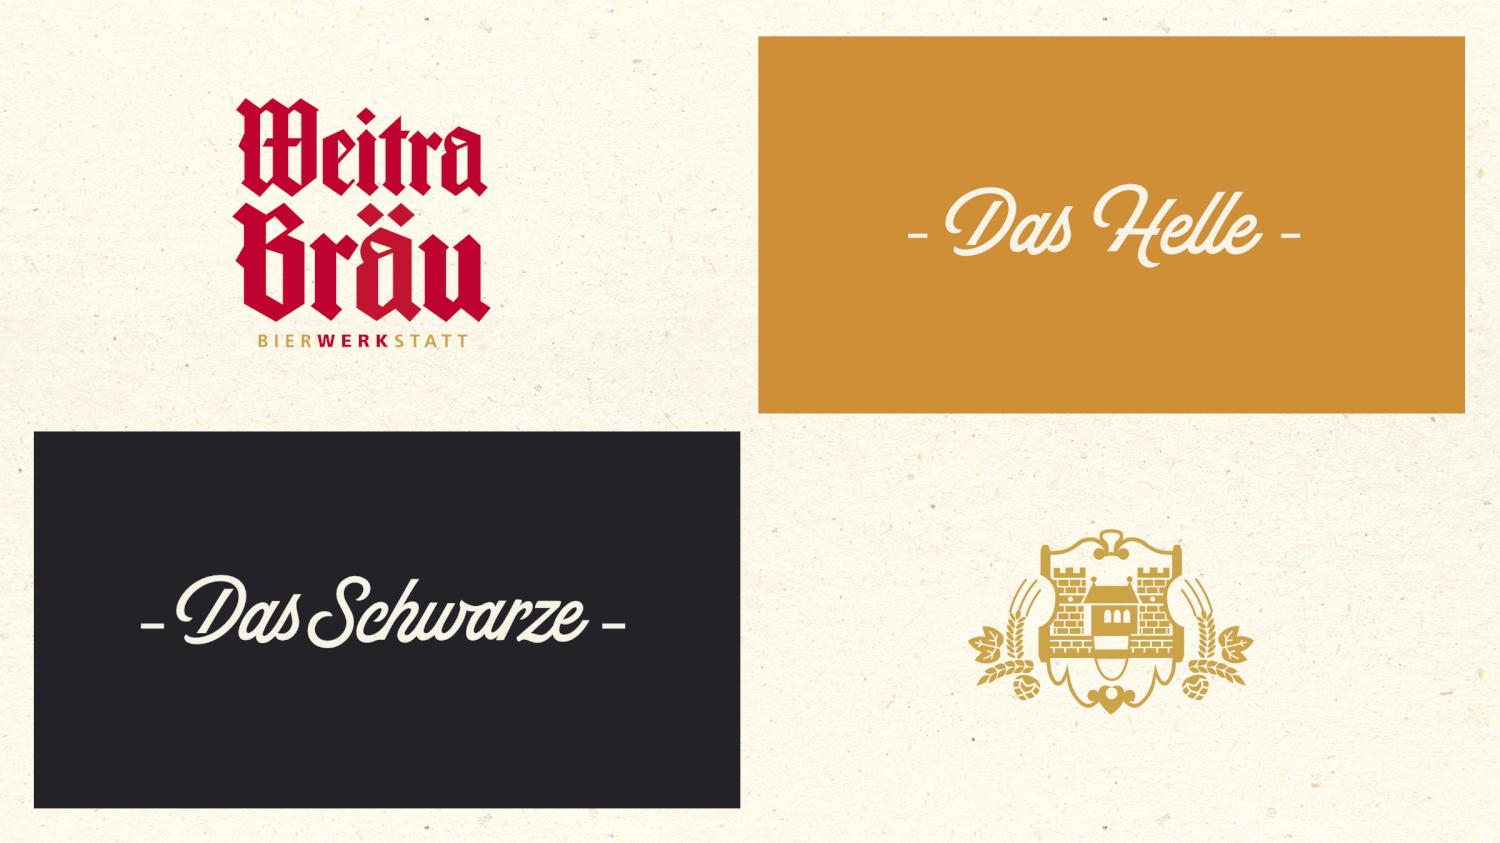 Weitra Braeu Bier Das Helle Das Schwarze Grafikdesign Verpackungsdesign Branding-Strategie Line Extension Logodesign